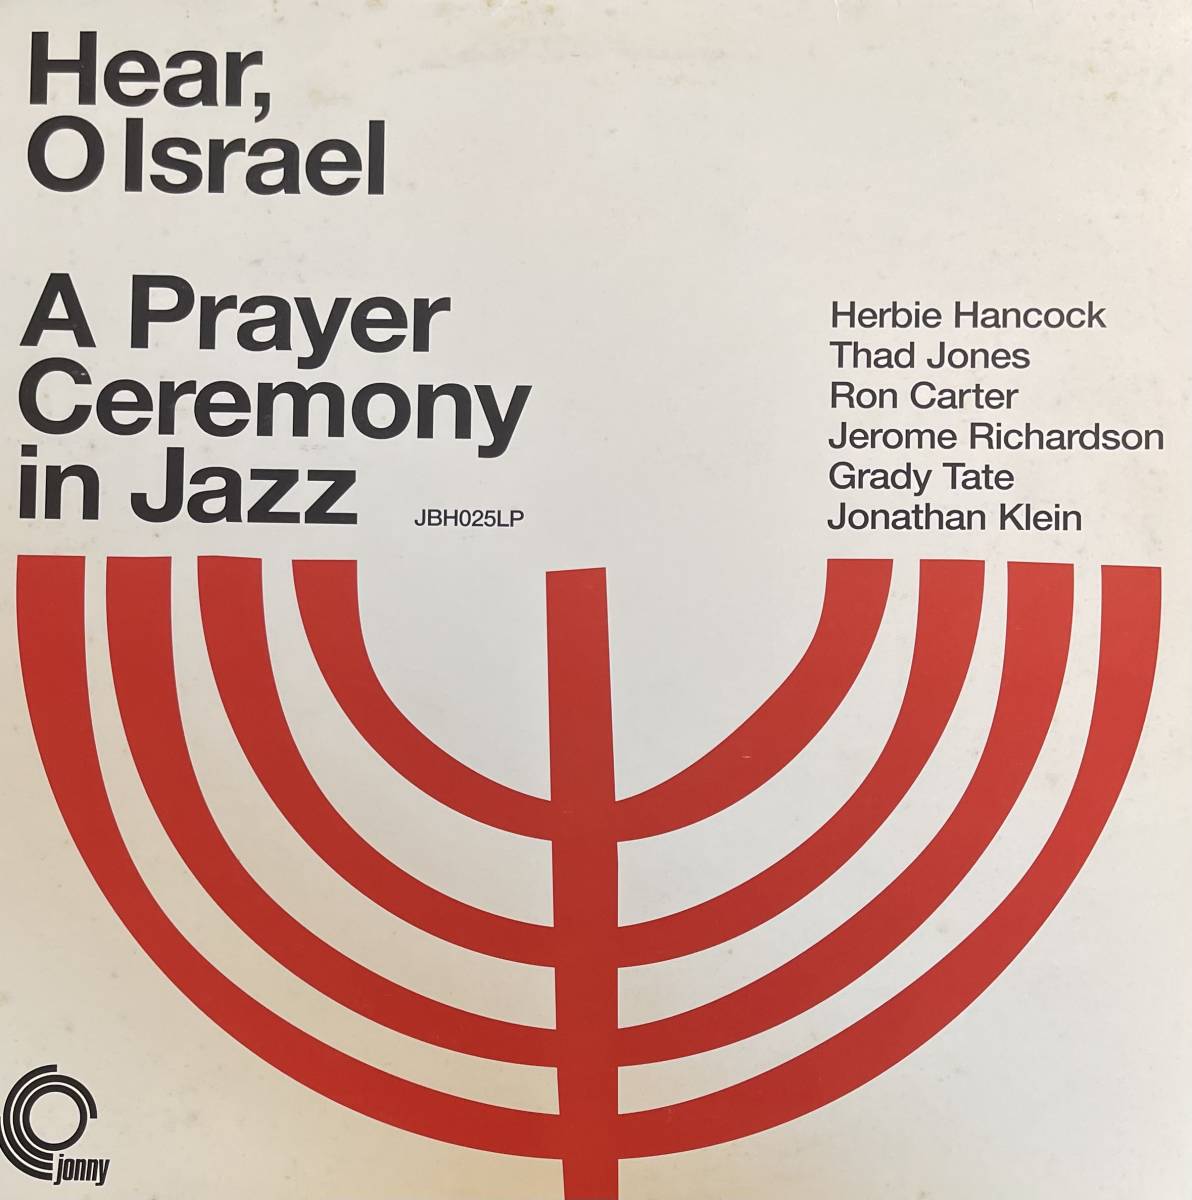 ★お求めやすく価格改定★ Israel O Hear, LP A Tate Grady Richardson Jerome Carter Ron Jones Thad Hancock Herbie Jazz in Ceremony Prayer ジャズ一般